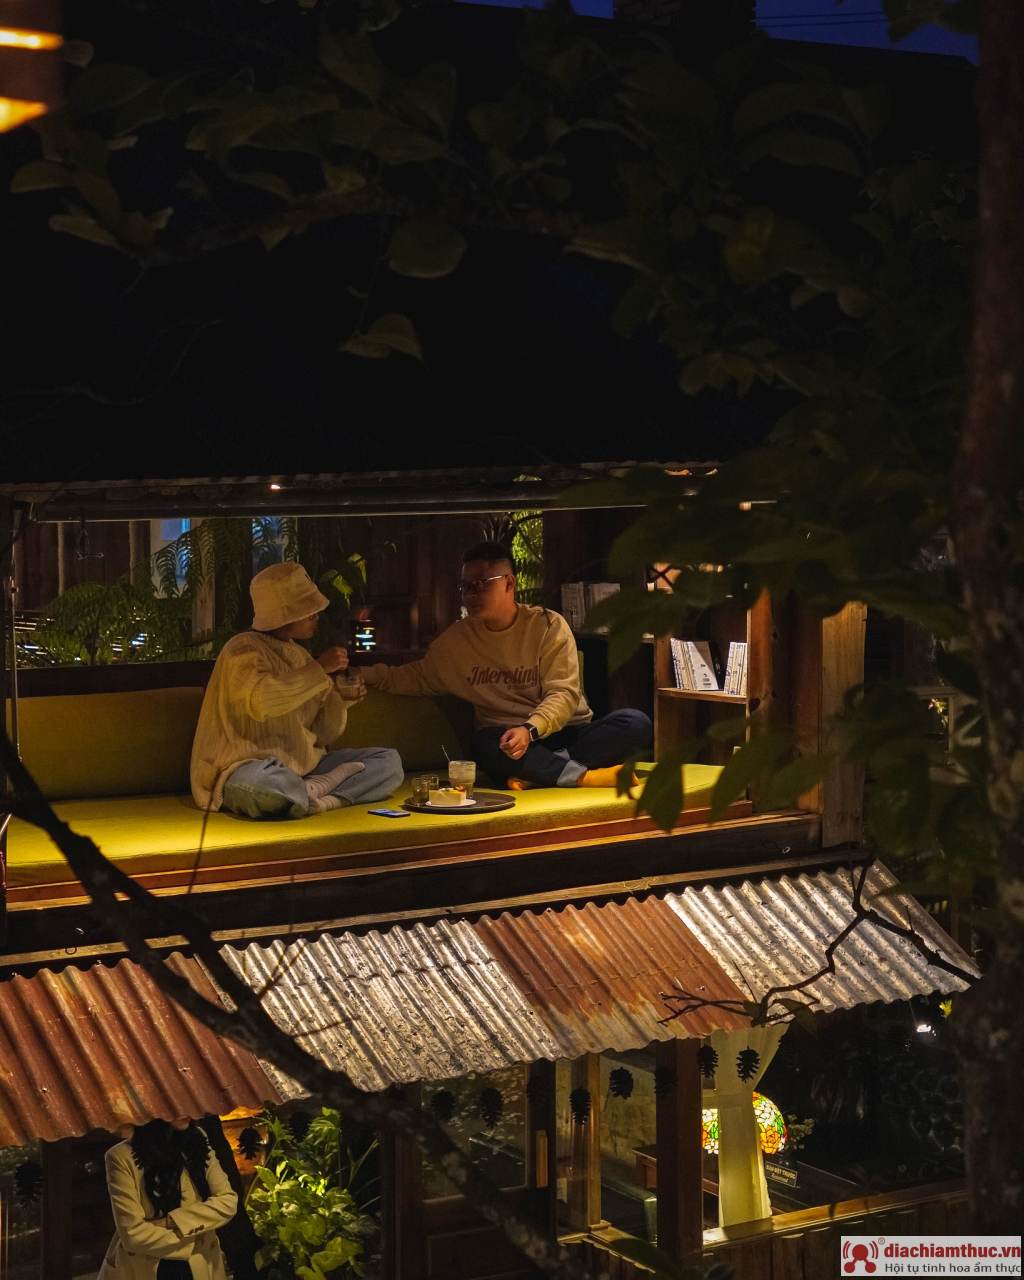 Bình Minh Ơi vào ban đêm